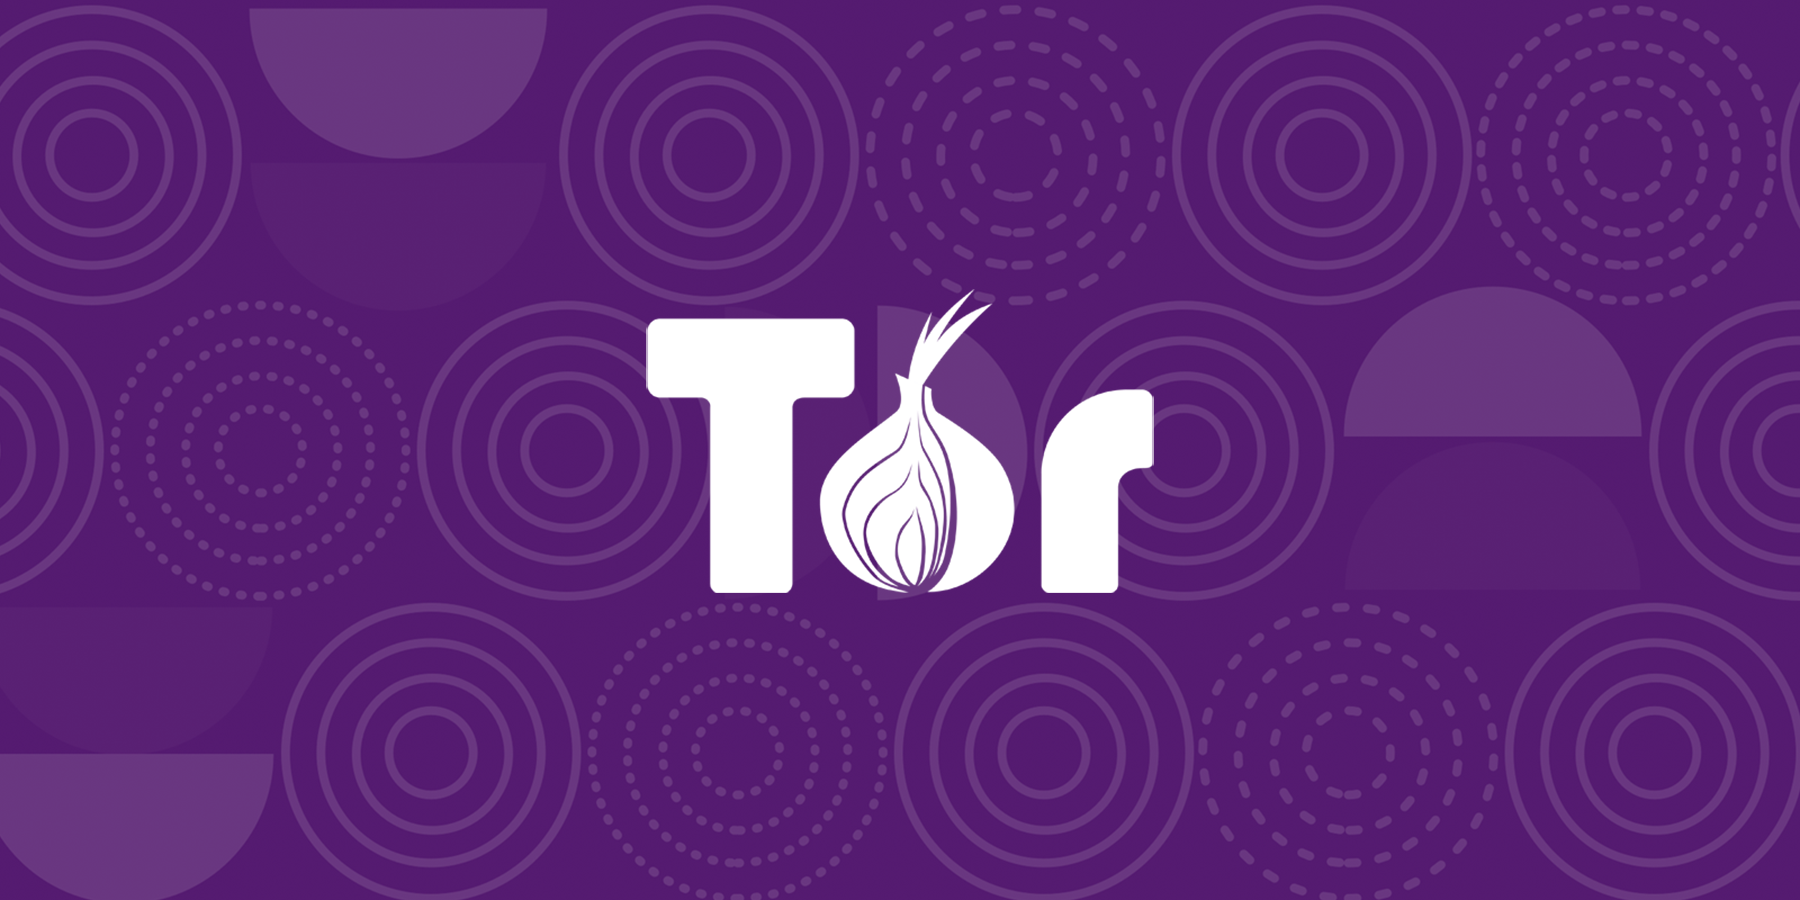 Descubra o Tor Browser para uma navegação anônima
Confira o Chromium, uma versão de código aberto do Google Chrome